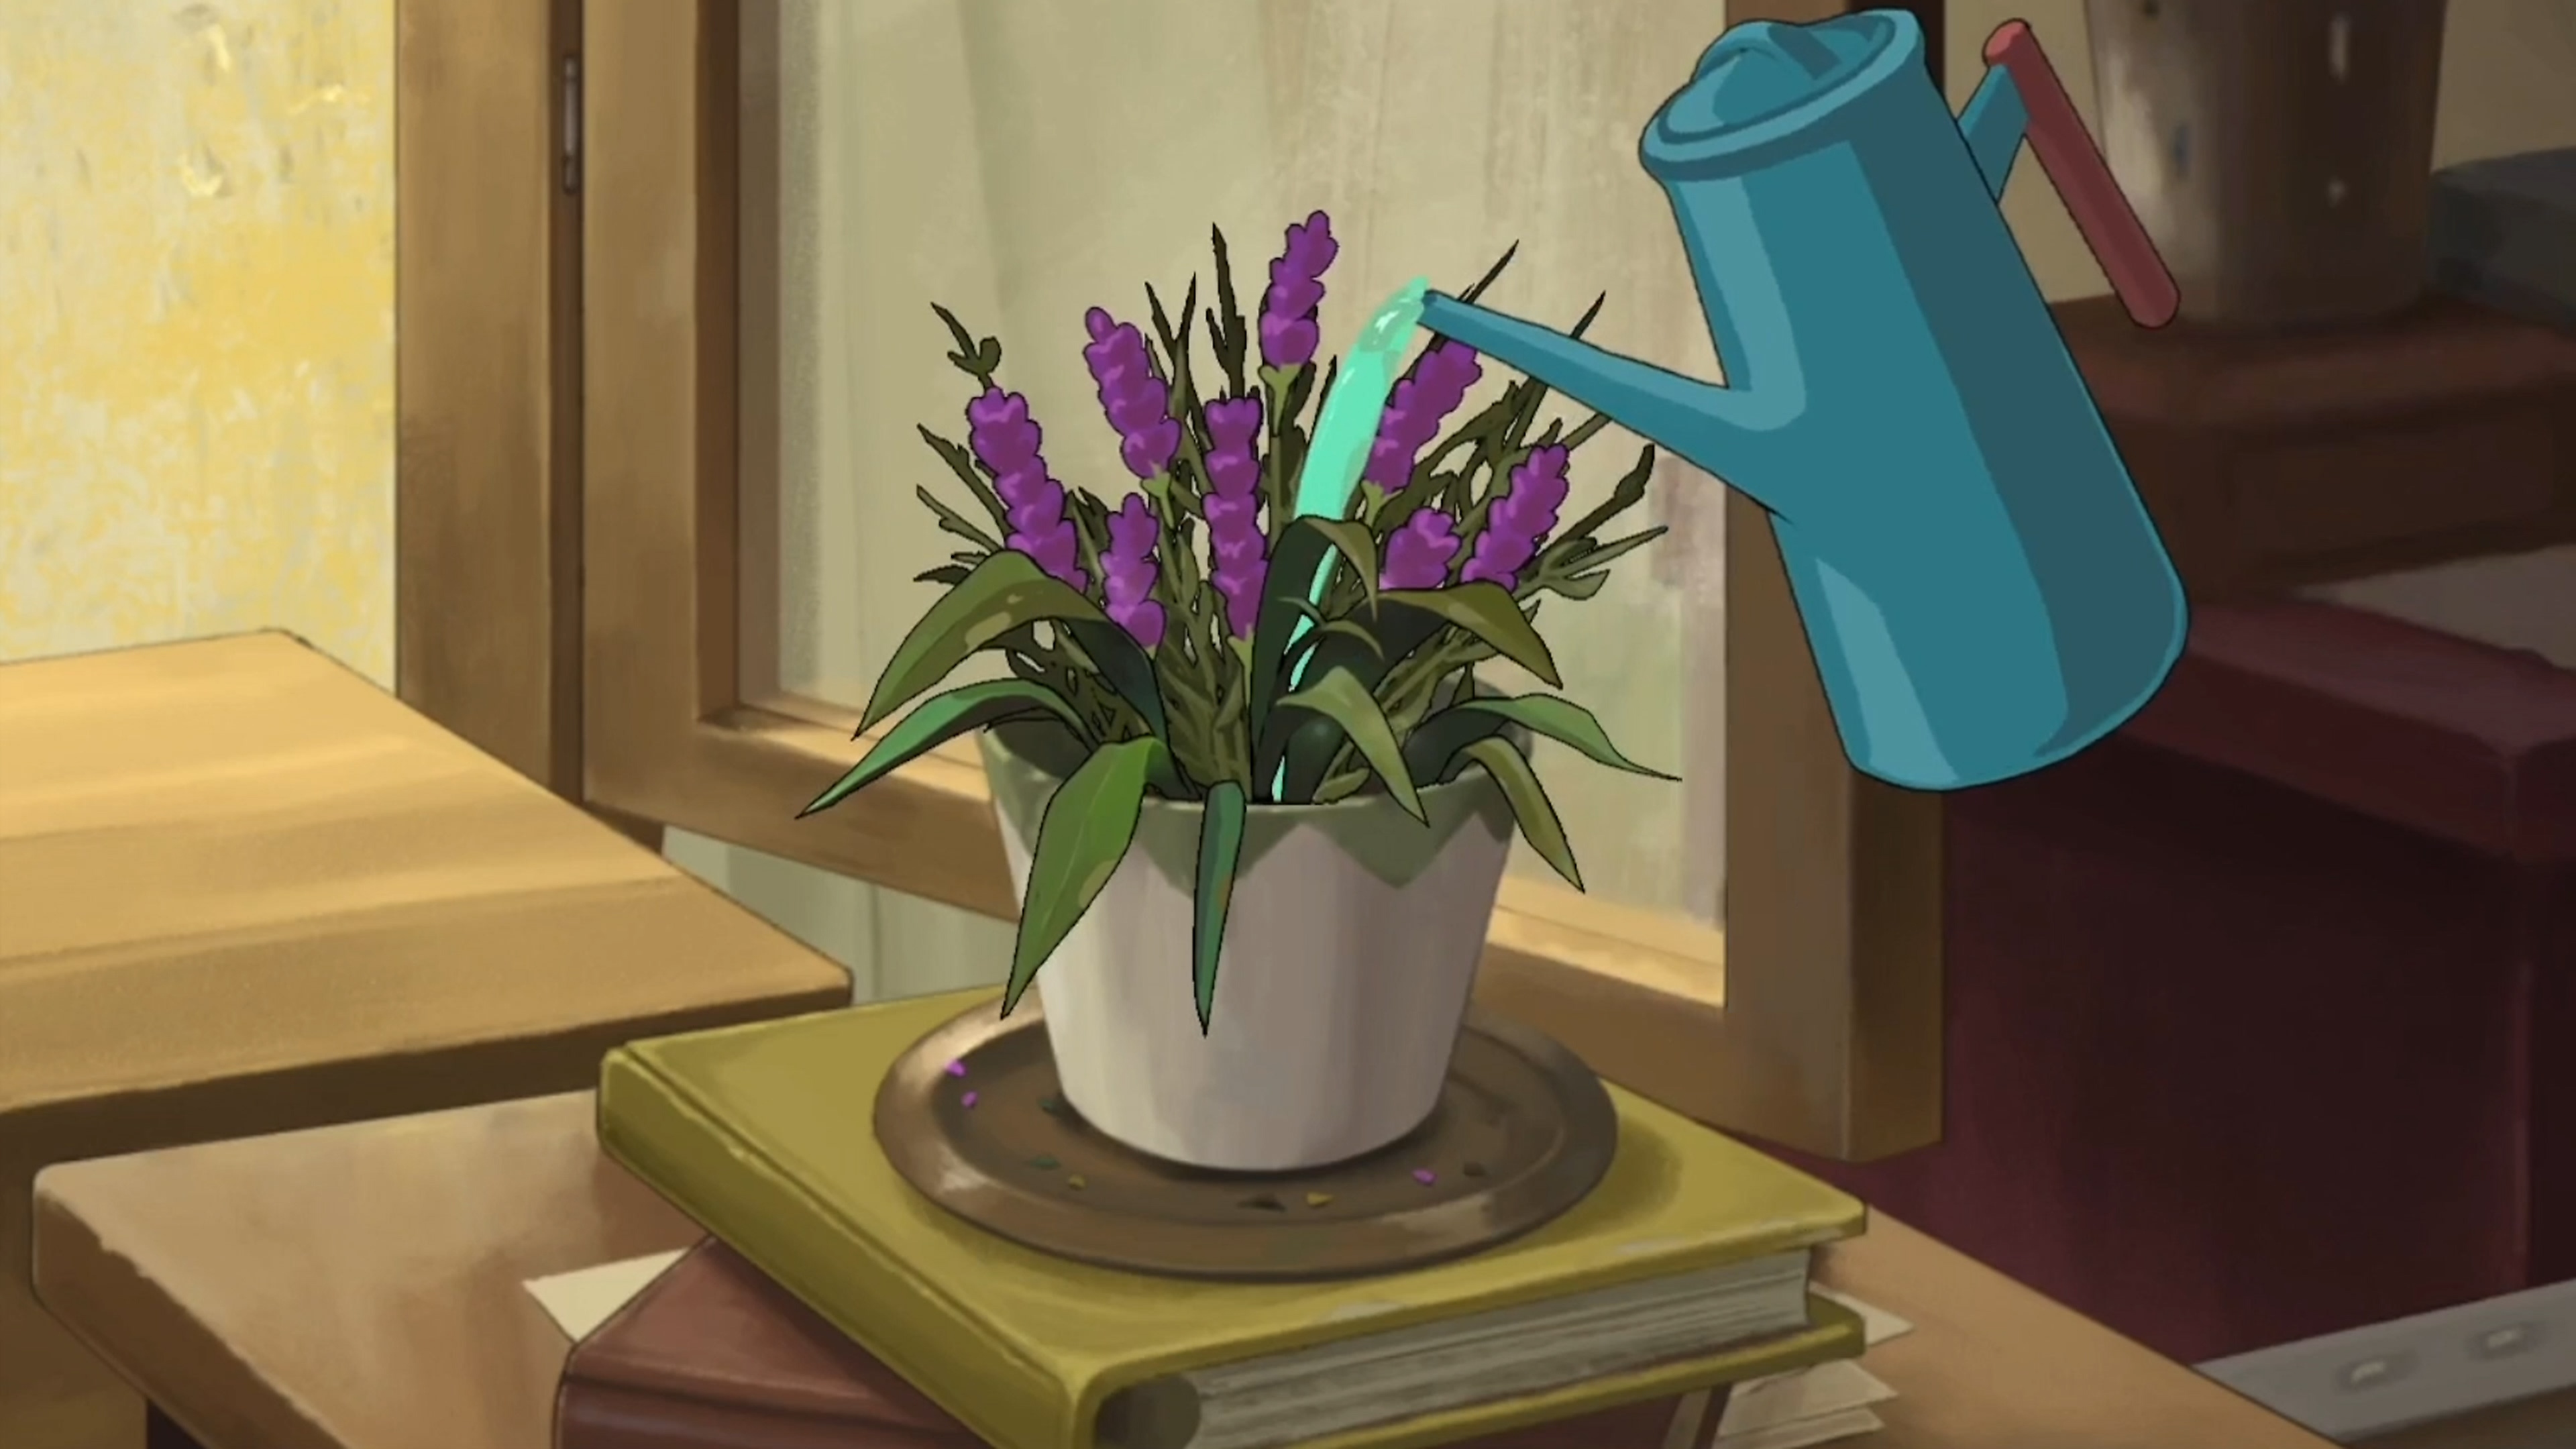 Behind the Frame: The Finest Scenery – zrzut ekranu przedstawiający podlewaną roślinę